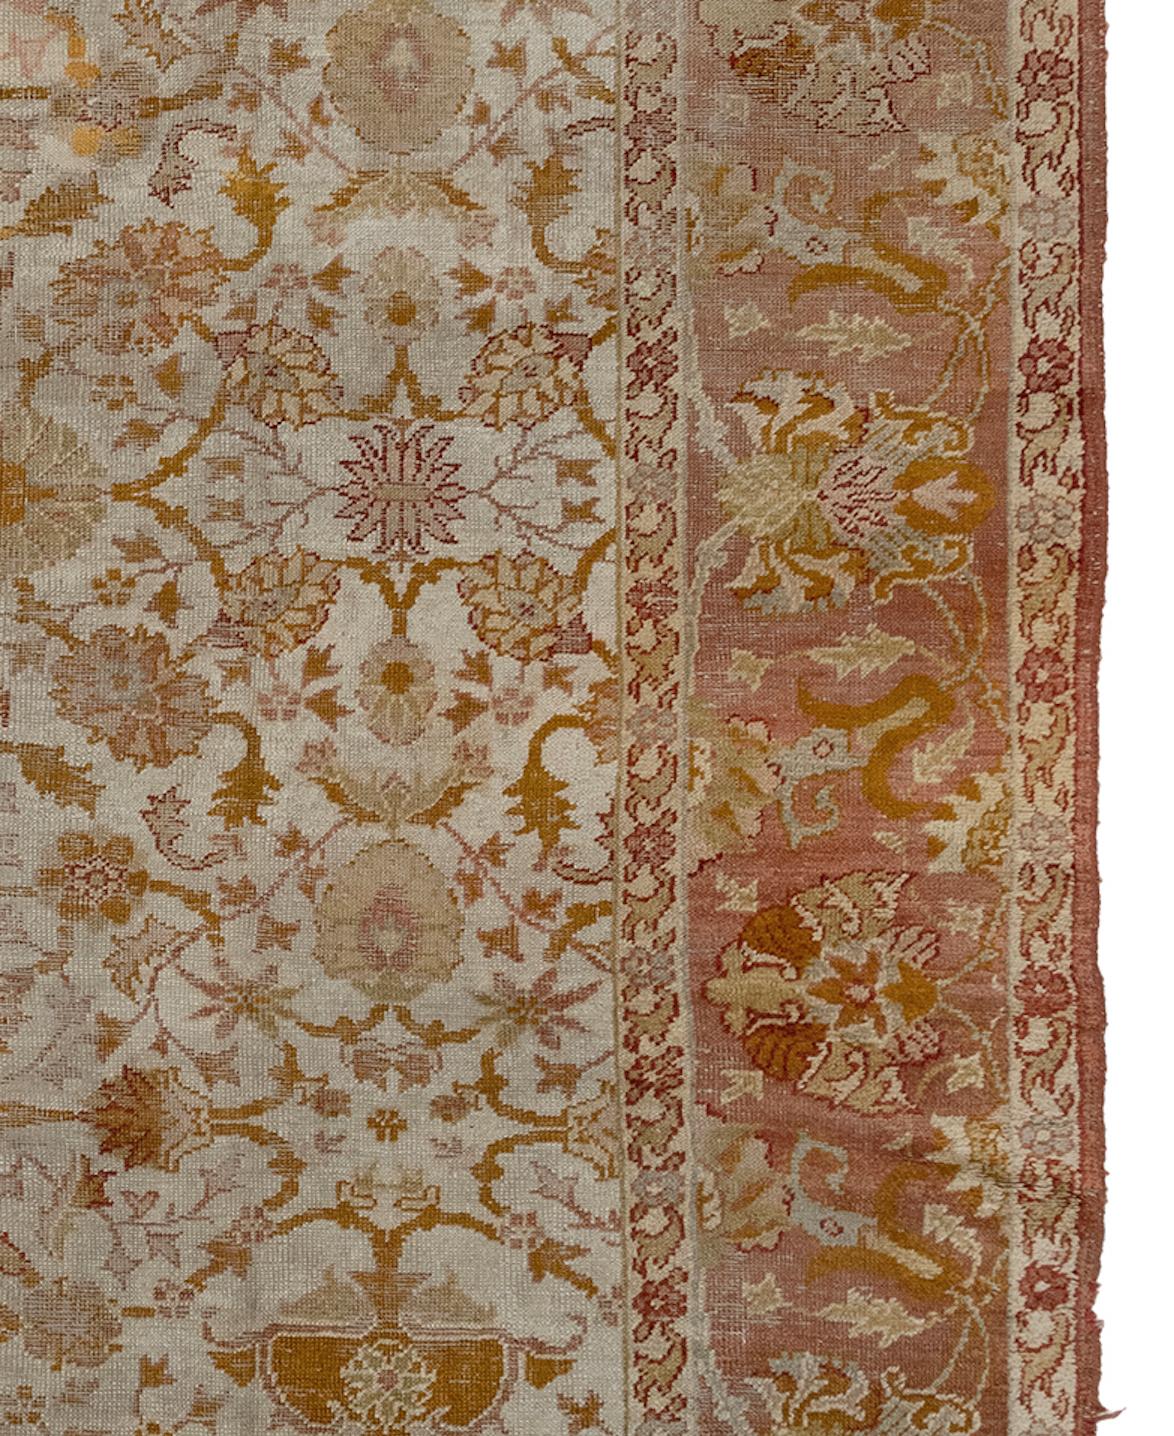 Les tapis Oushak sont originaires de la ville d'Usak, en Turquie, et utilisent une famille particulière de motifs composés de teintures qui tendent vers les cannelle, les teintes terracotta, l'or, les bleus, les verts, l'ivoire, le safran et les